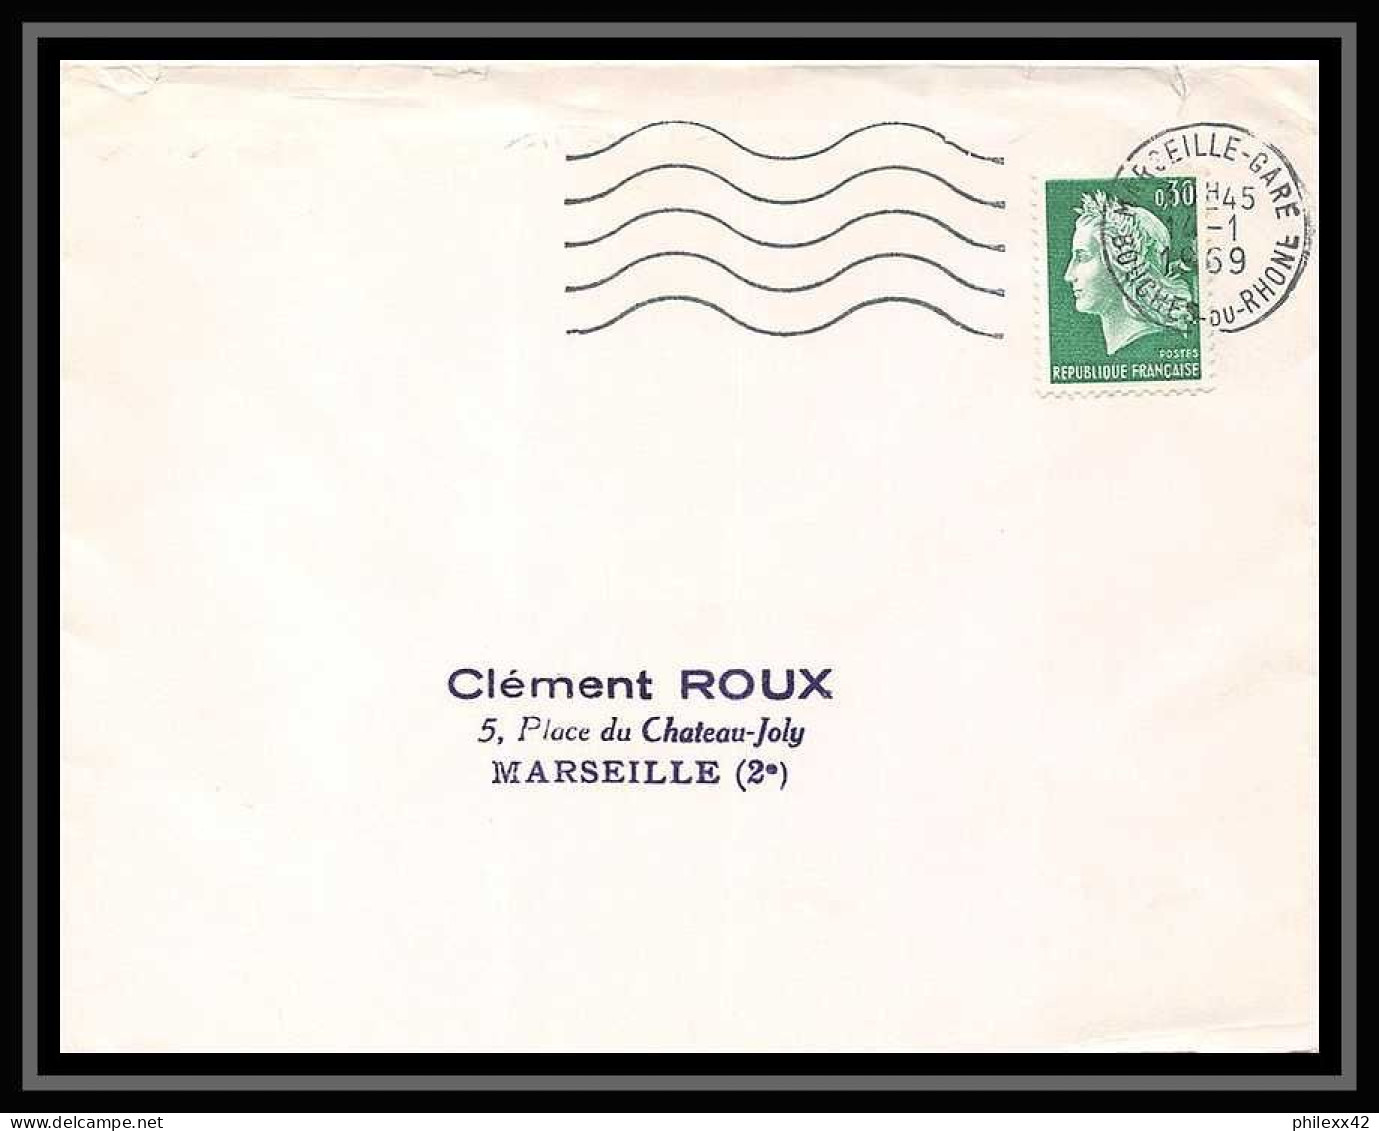 109401 lot de 31 Lettres Bouches du rhone Marseille Gare ferroviaire "